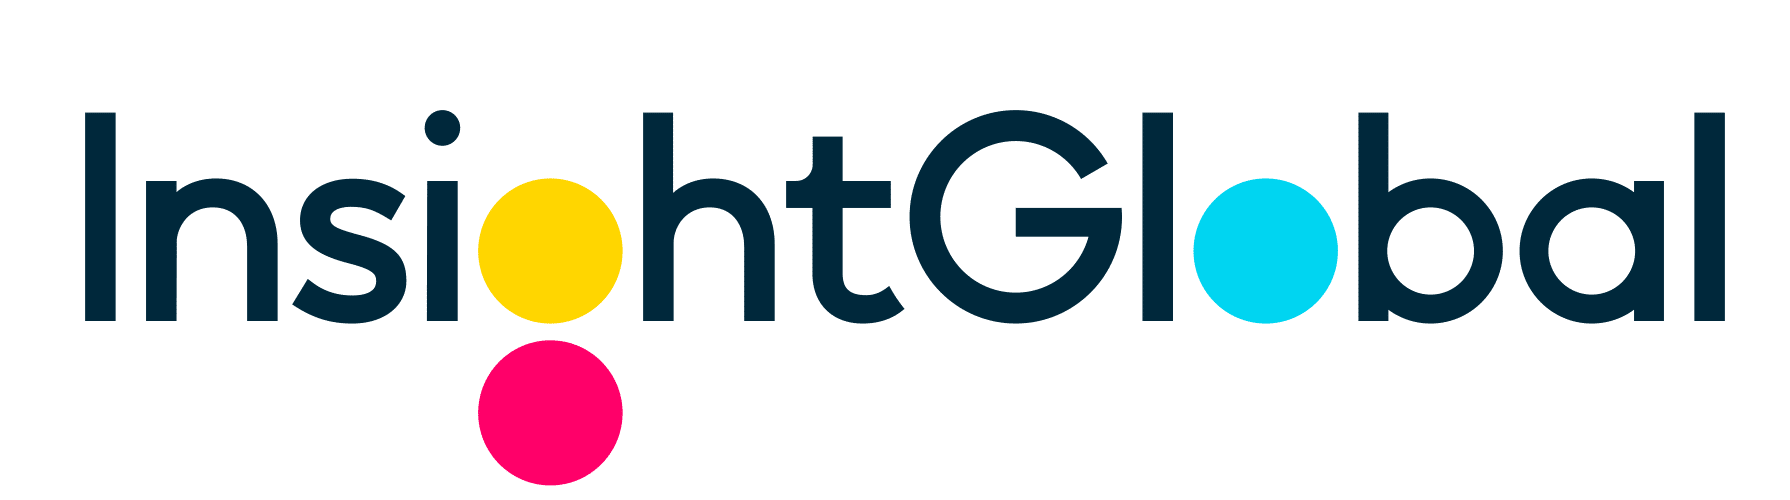 Insight Global Logo Netsimco Partner